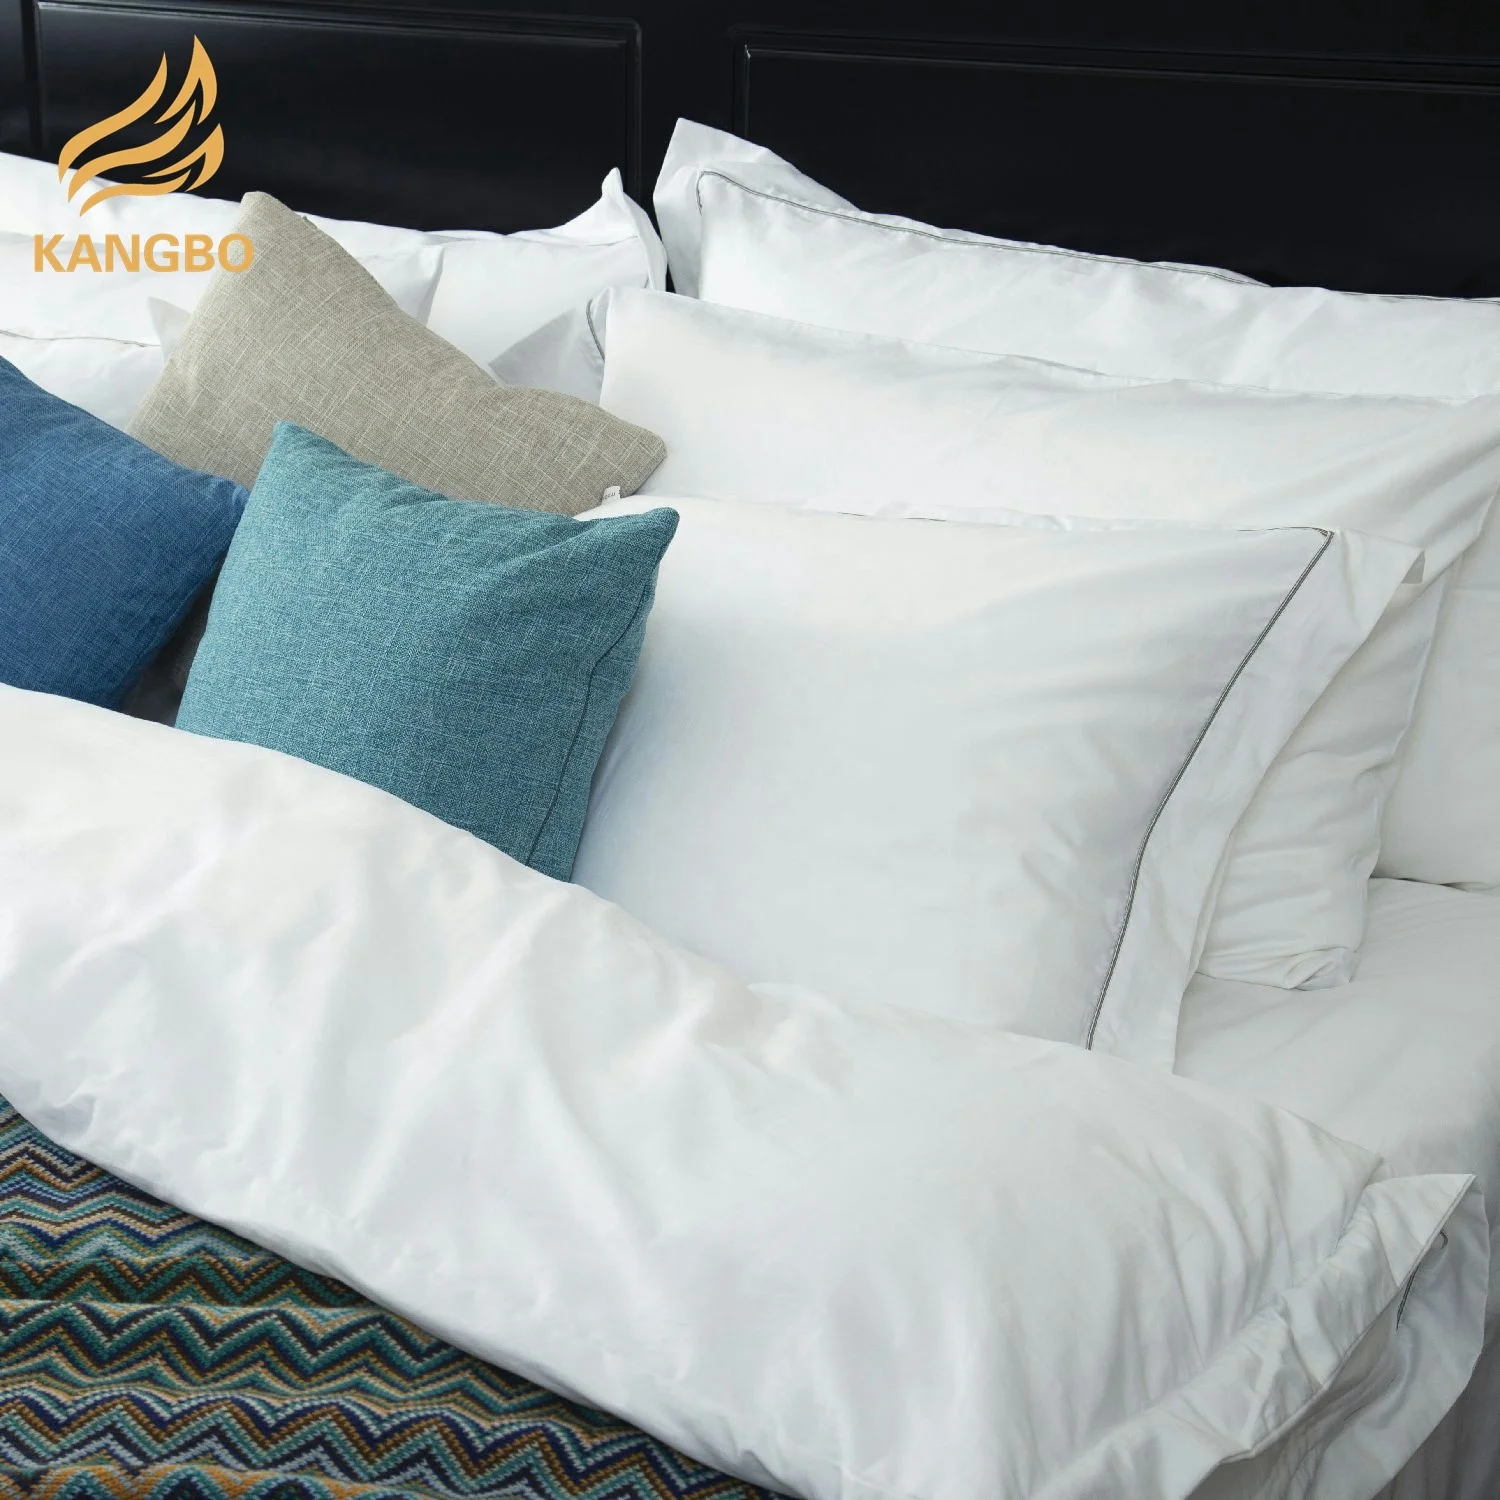 ΧΟΝΔΡΙΚΟ ΕΜΠΟΡΙΟ 100% cotton plain white bedding sets bed sheet for home hotel